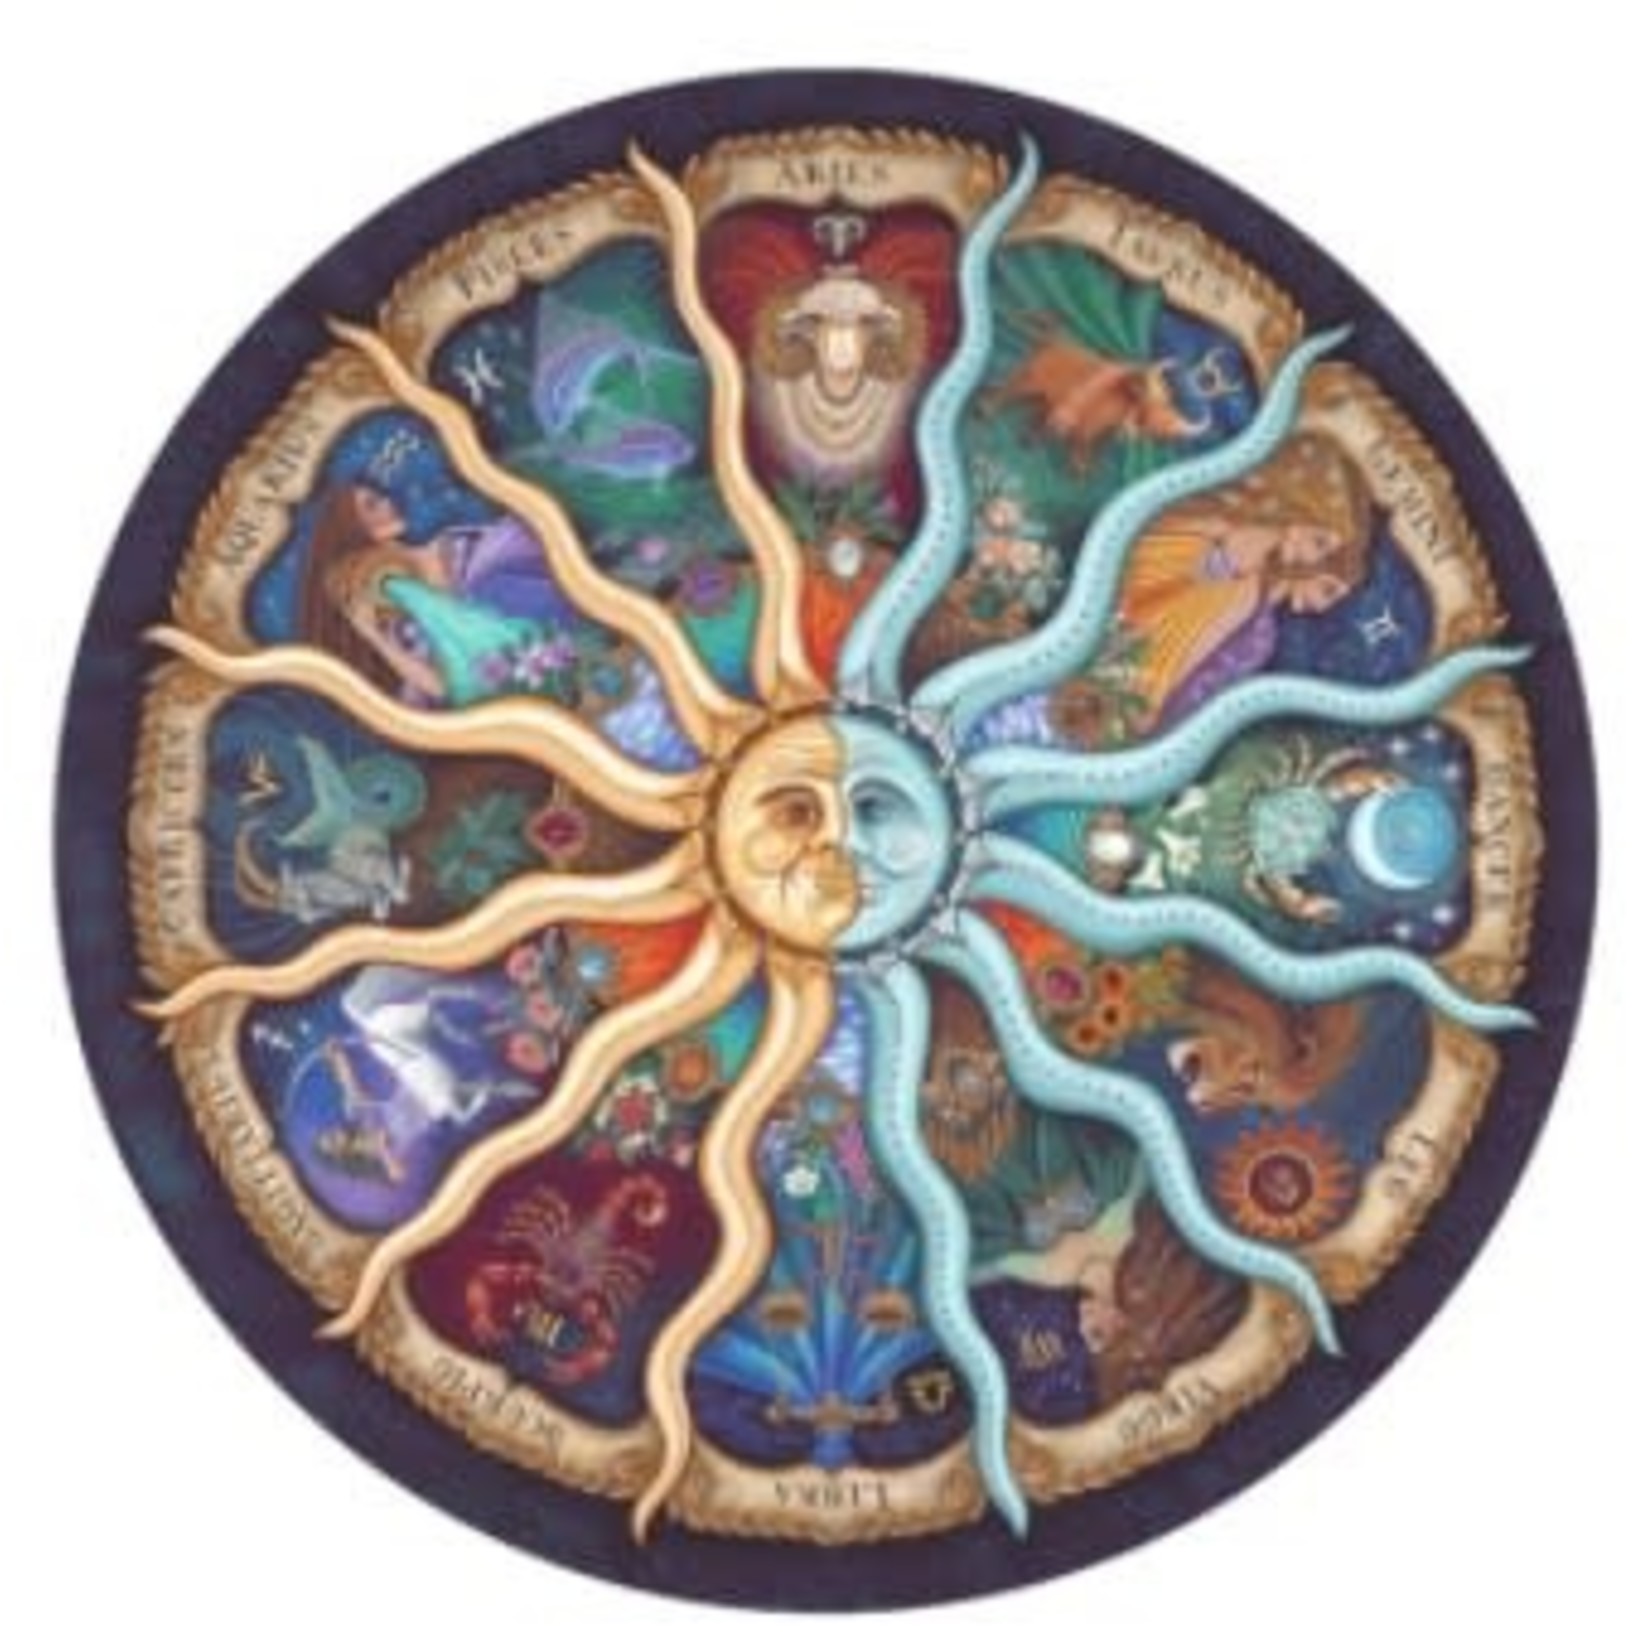 Horoscoop, sterrenbeelden in cirkel